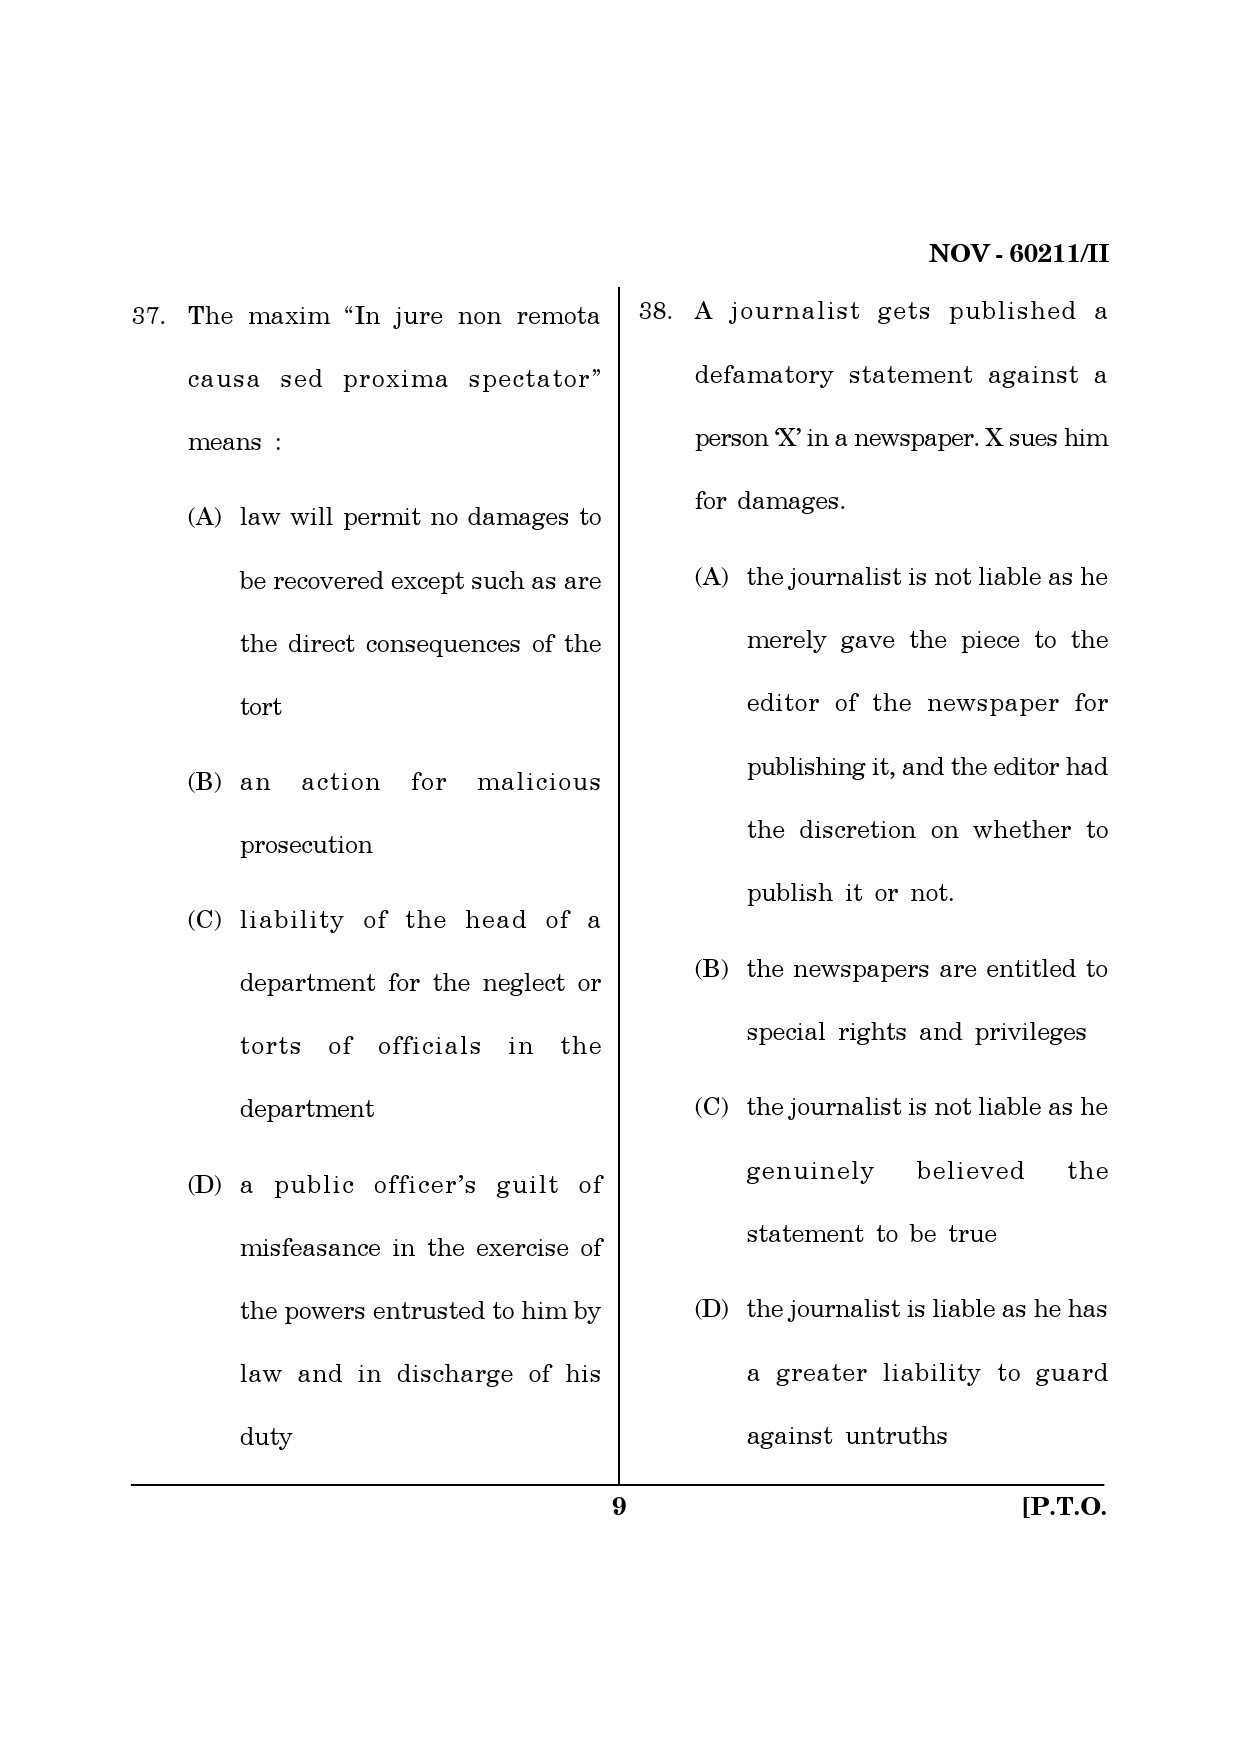 Maharashtra SET Law Question Paper II November 2011 9